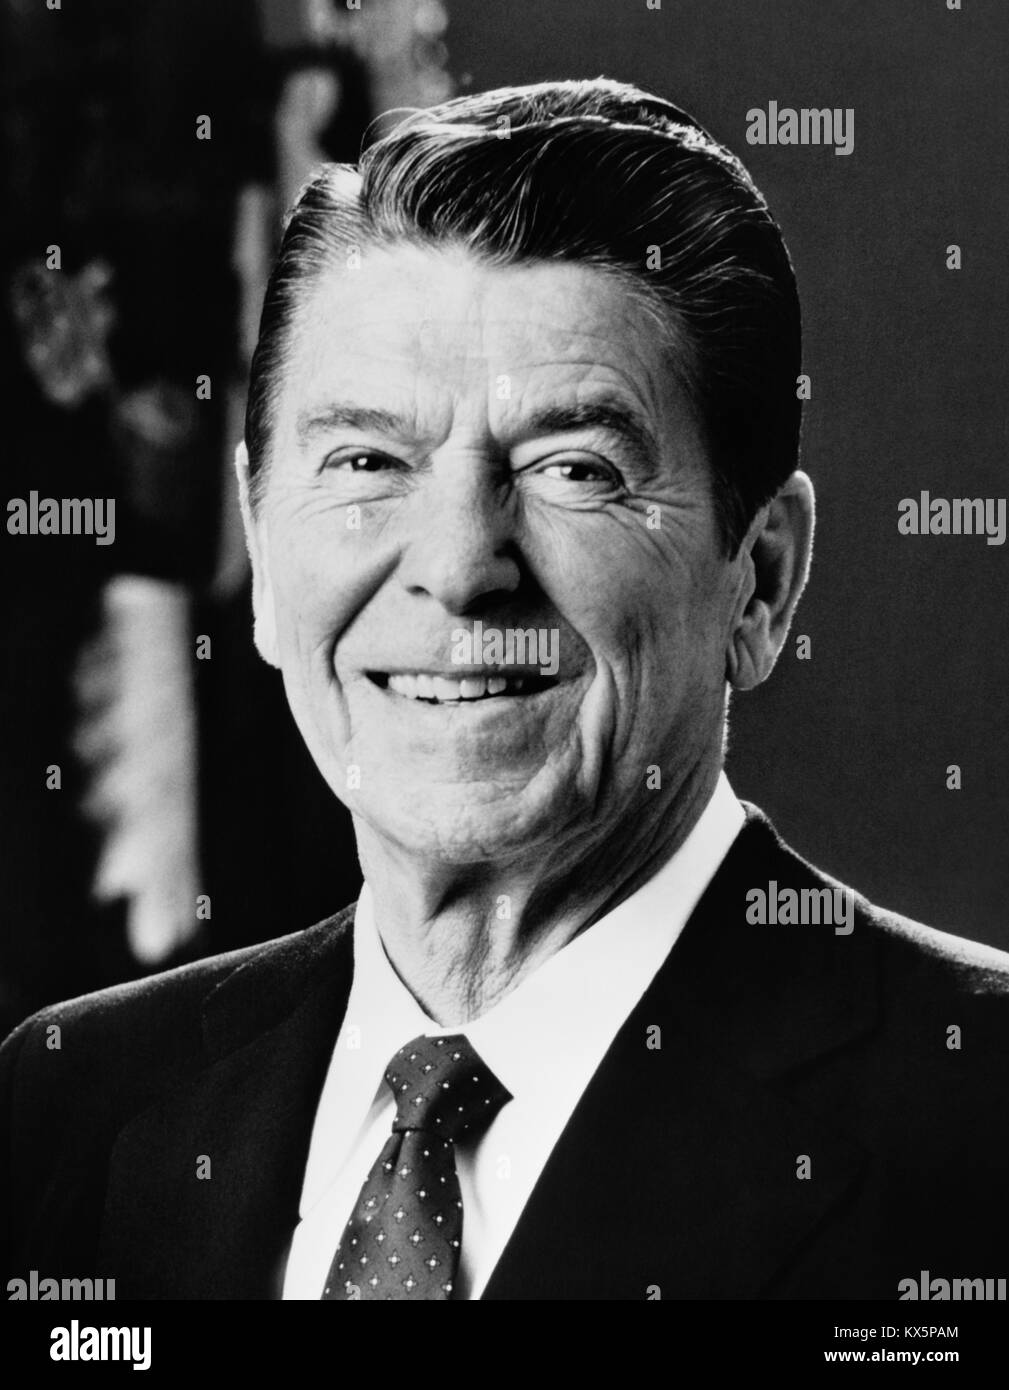 Le président Ronald Reagan (1911-2004) fut le 40e président des États-Unis (01/20/1981 - 01/20/1989). Banque D'Images